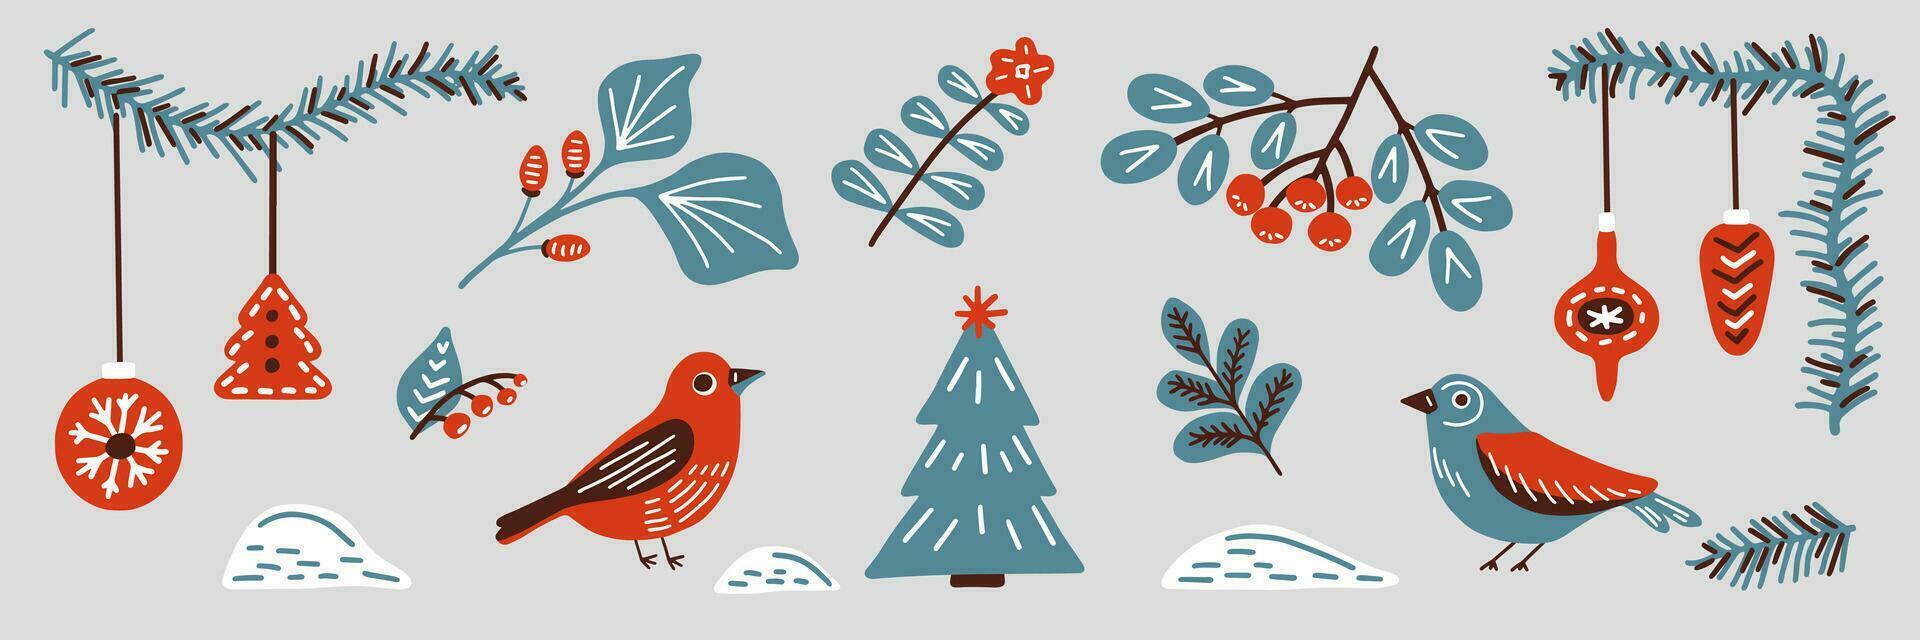 vinter- blommig och fågel i scandinavian enkel retro stil. årgång hand dragen tecknad serie ClipArt - gren, bär, leksak, dekoration för jul kort, affisch, flygblad, skriva ut och mönster. vektor